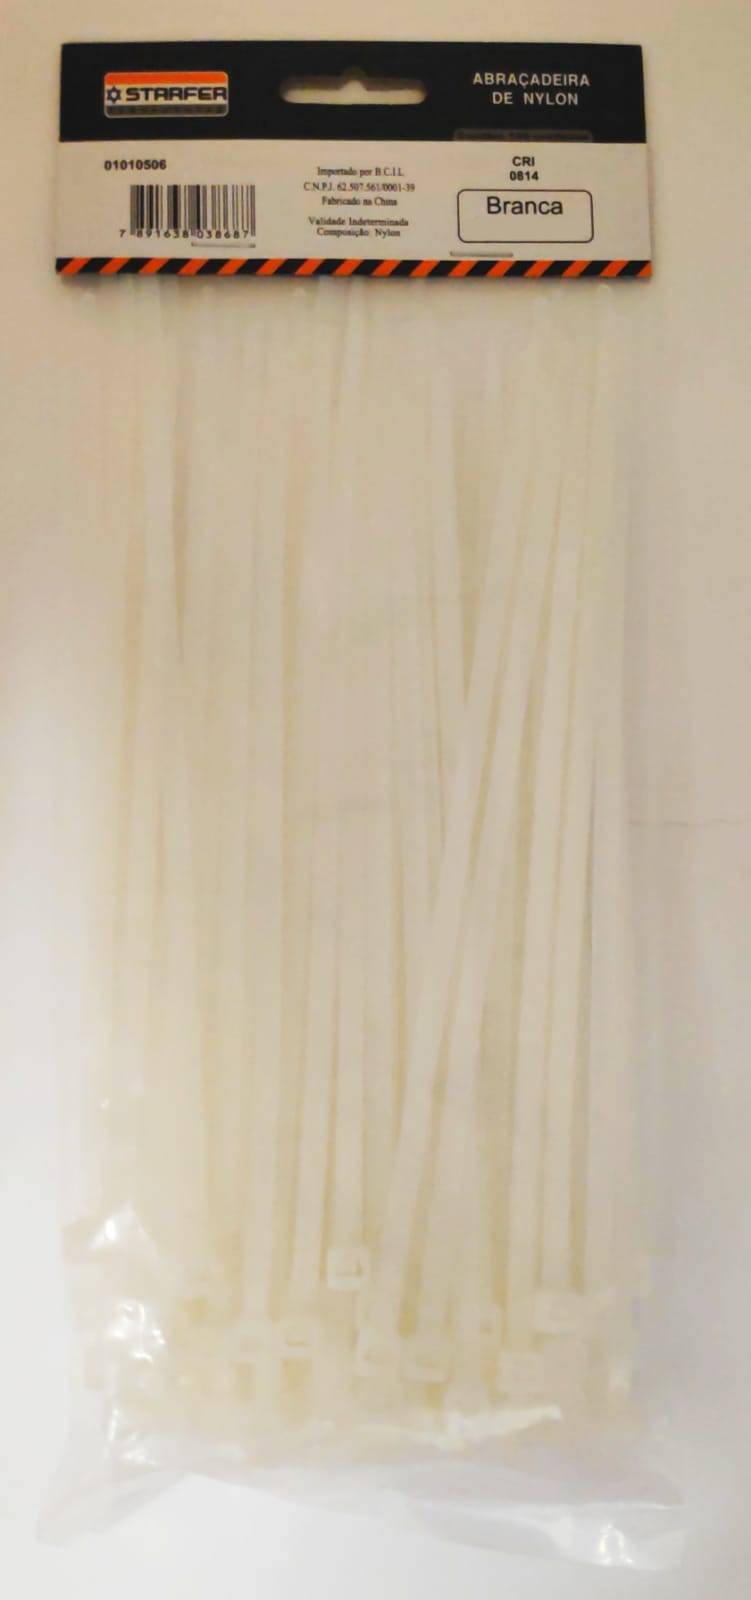 Abraçadeira de Nylon Branca 200mmx3,6mm Com 100 Peças - Starfer